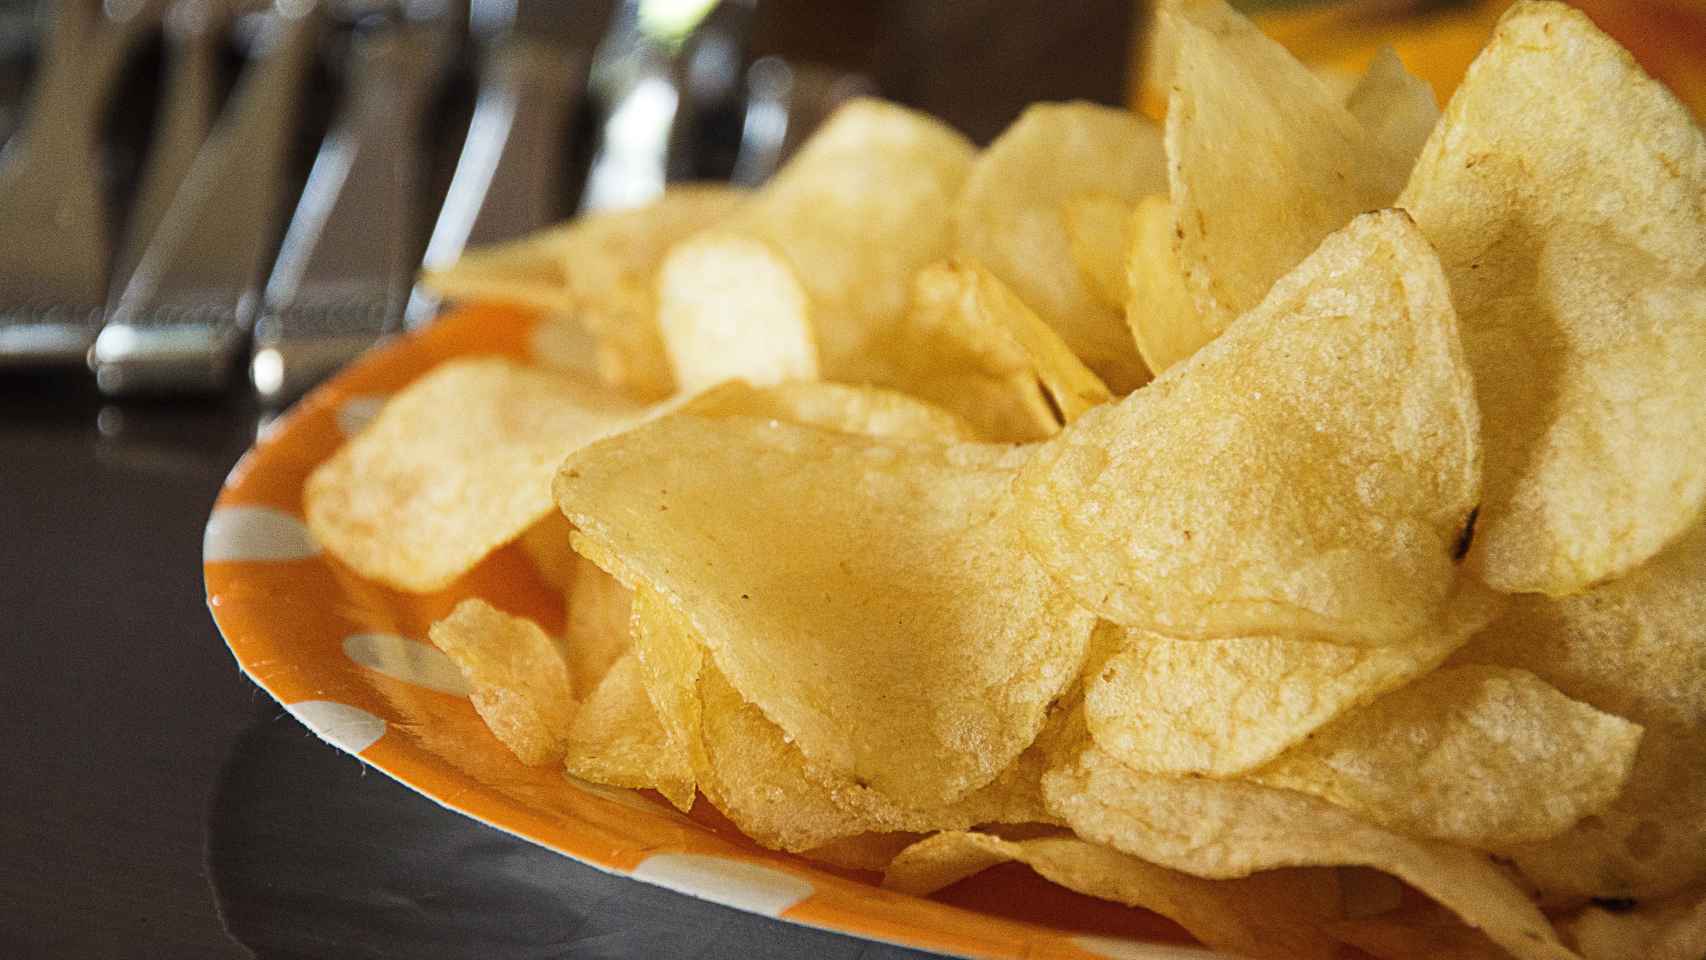 Imprescindibles en cualquier casa o bar, las chips fueron creadas para fastidiar a un cliente demasiado exigente